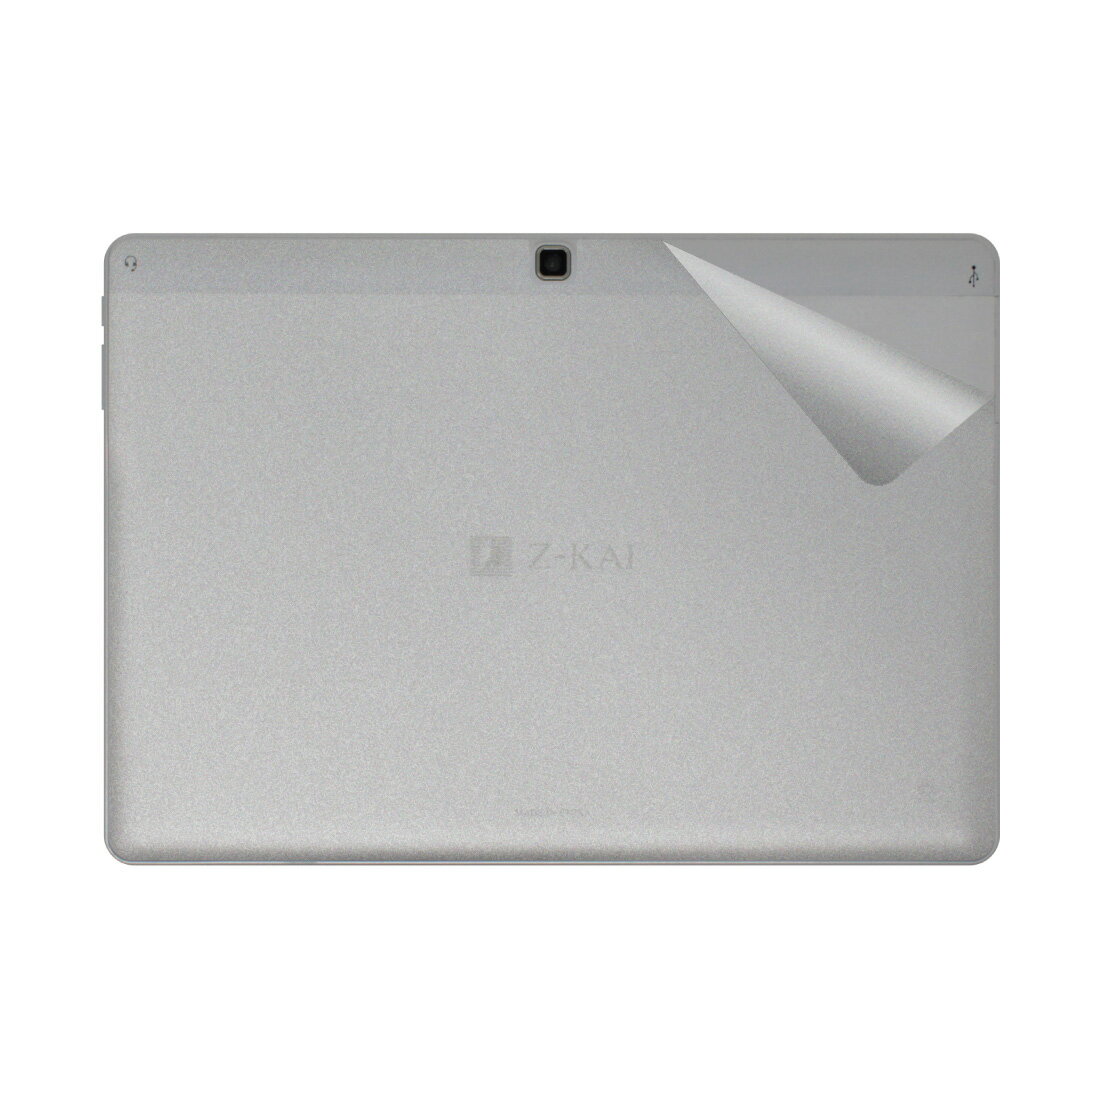 ドレスアップシール Z会専用タブレット (第1世代) Z0IA1  日本製 自社製造直販